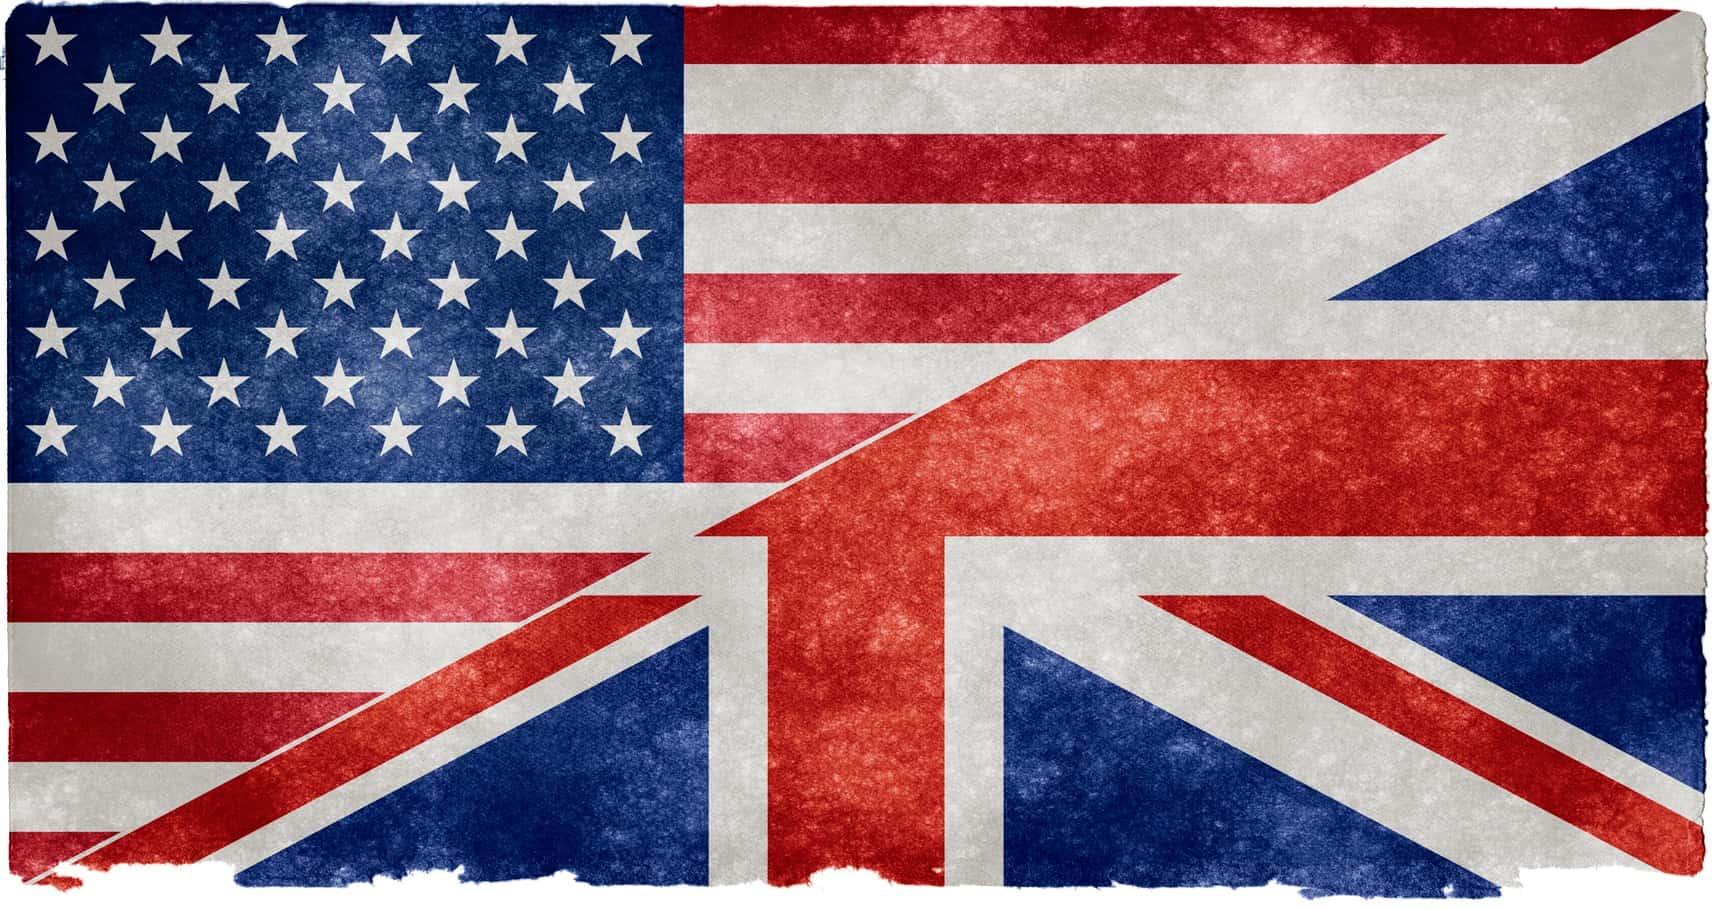 الفرق بين النظام الجامعي الأمريكي والنظام الجامعي البريطاني